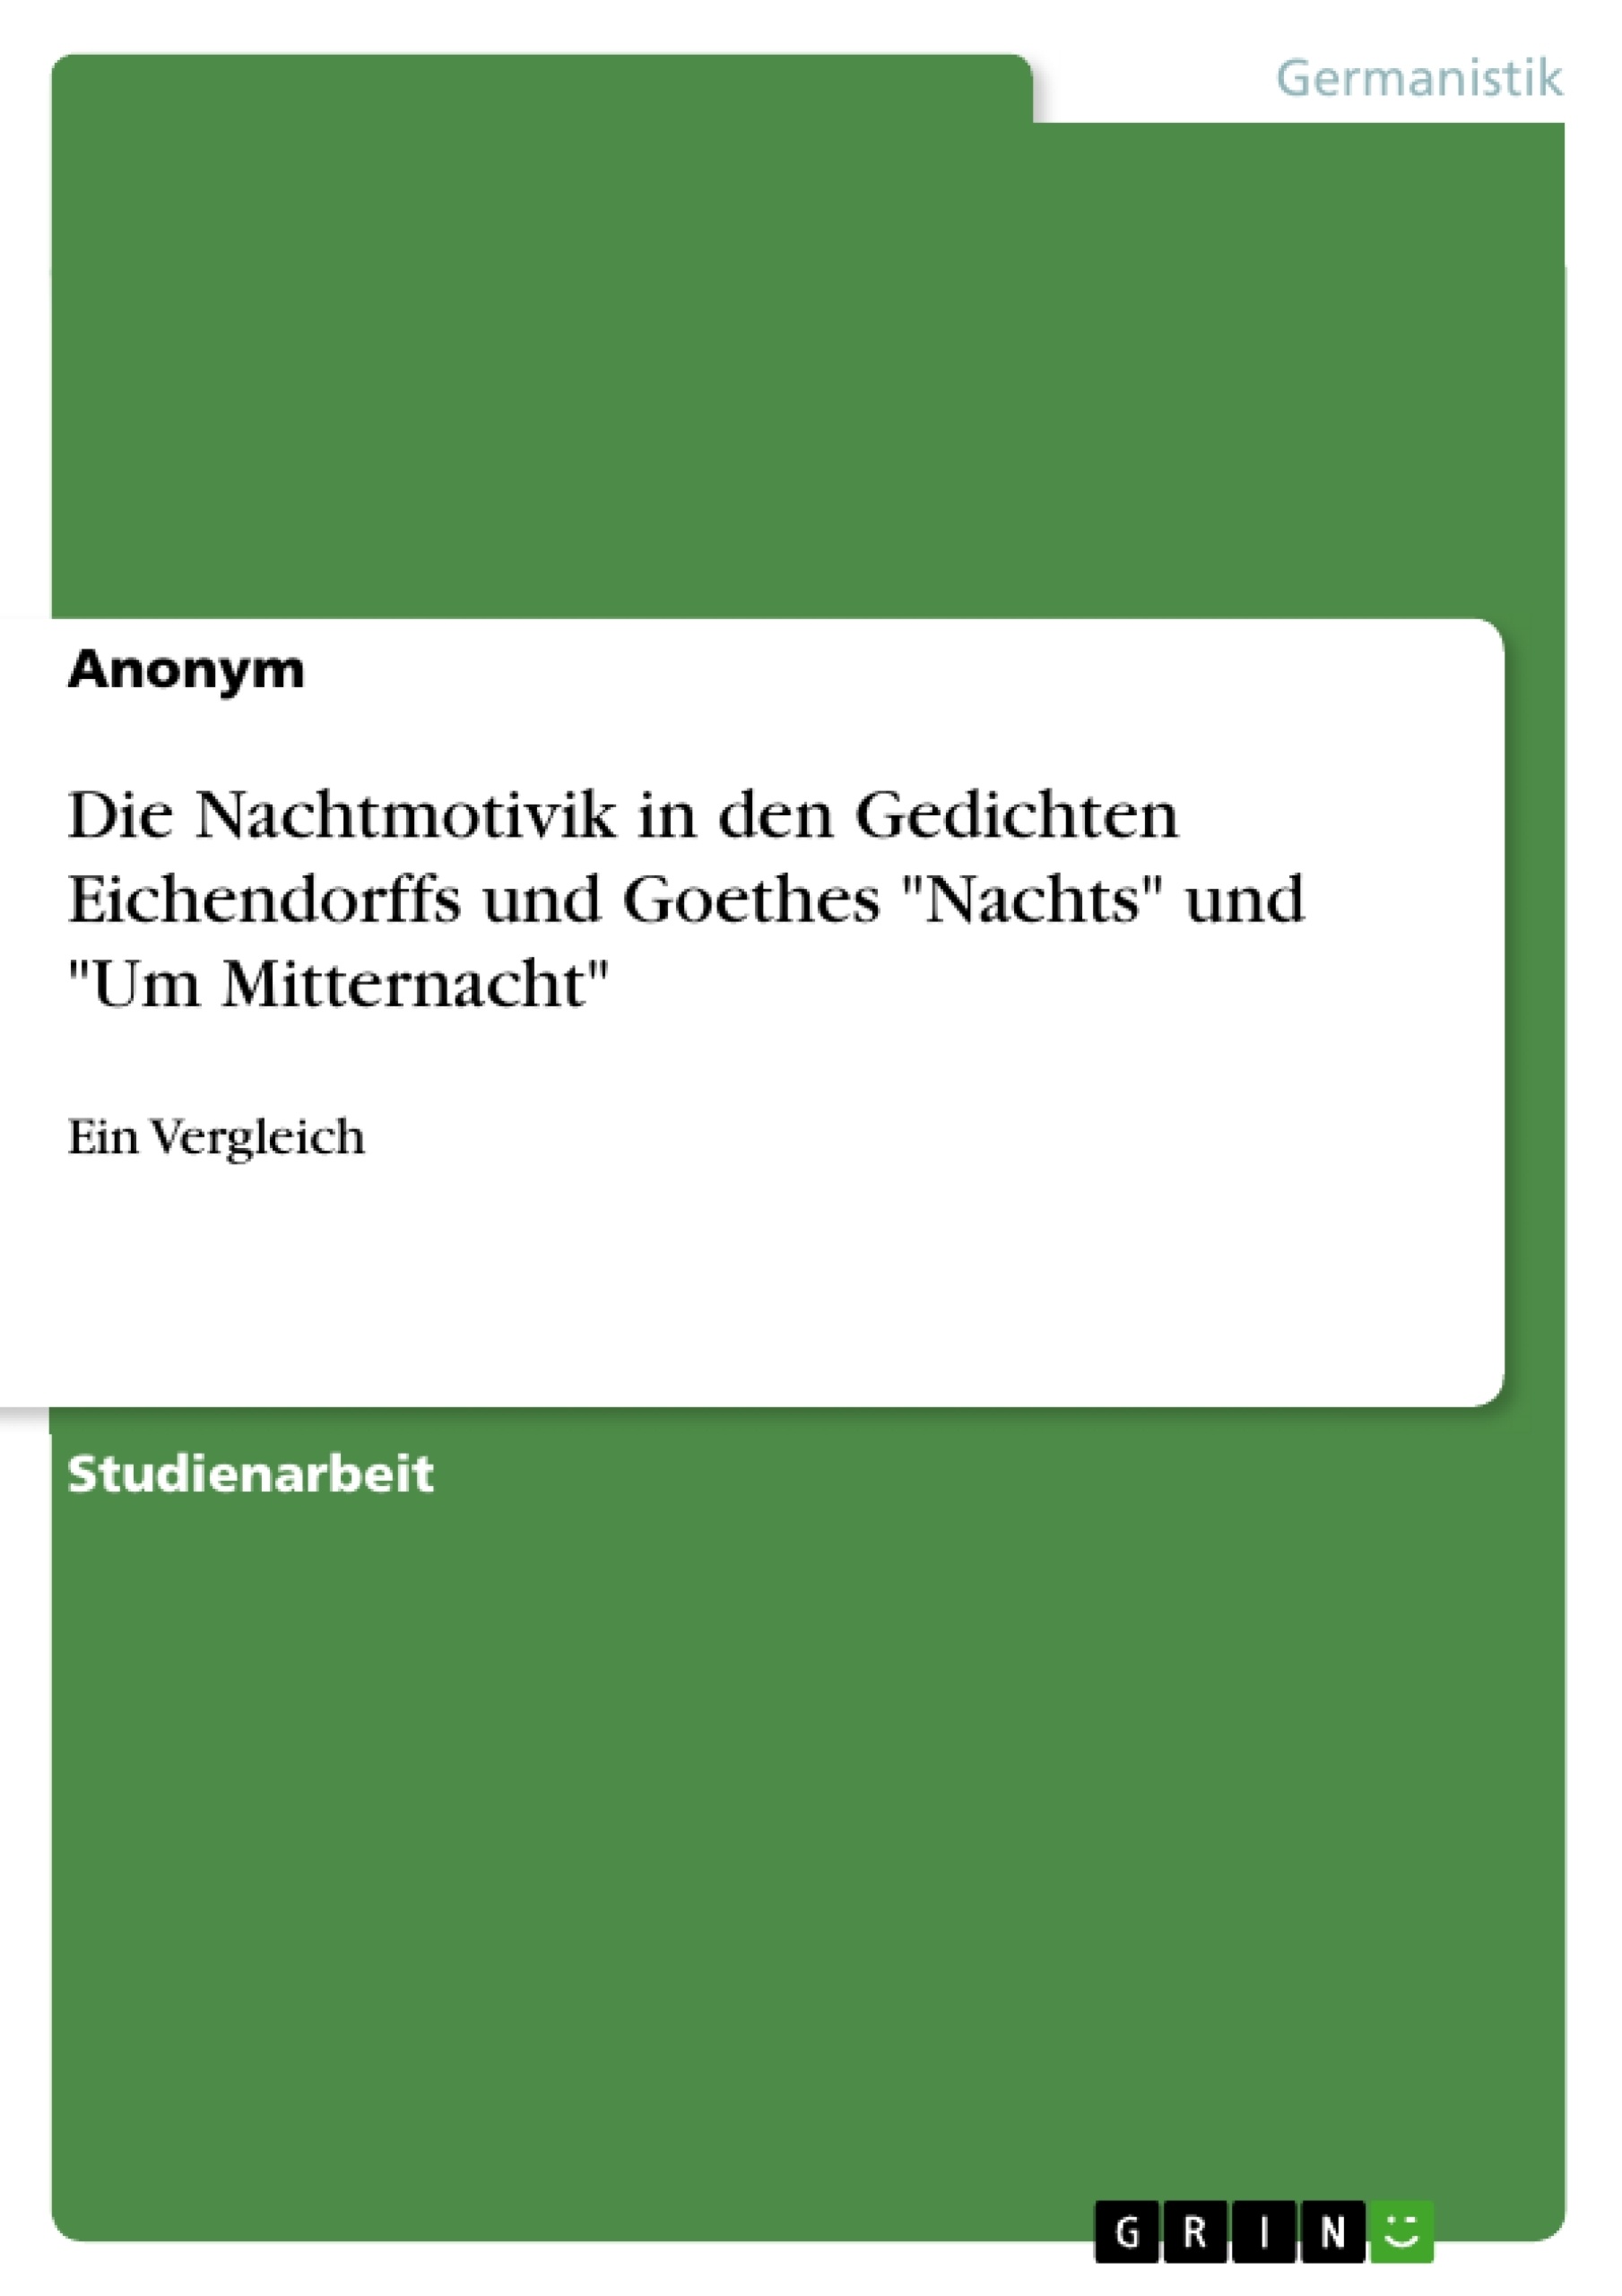 Titre: Die Nachtmotivik in den Gedichten Eichendorffs und Goethes "Nachts" und "Um Mitternacht"